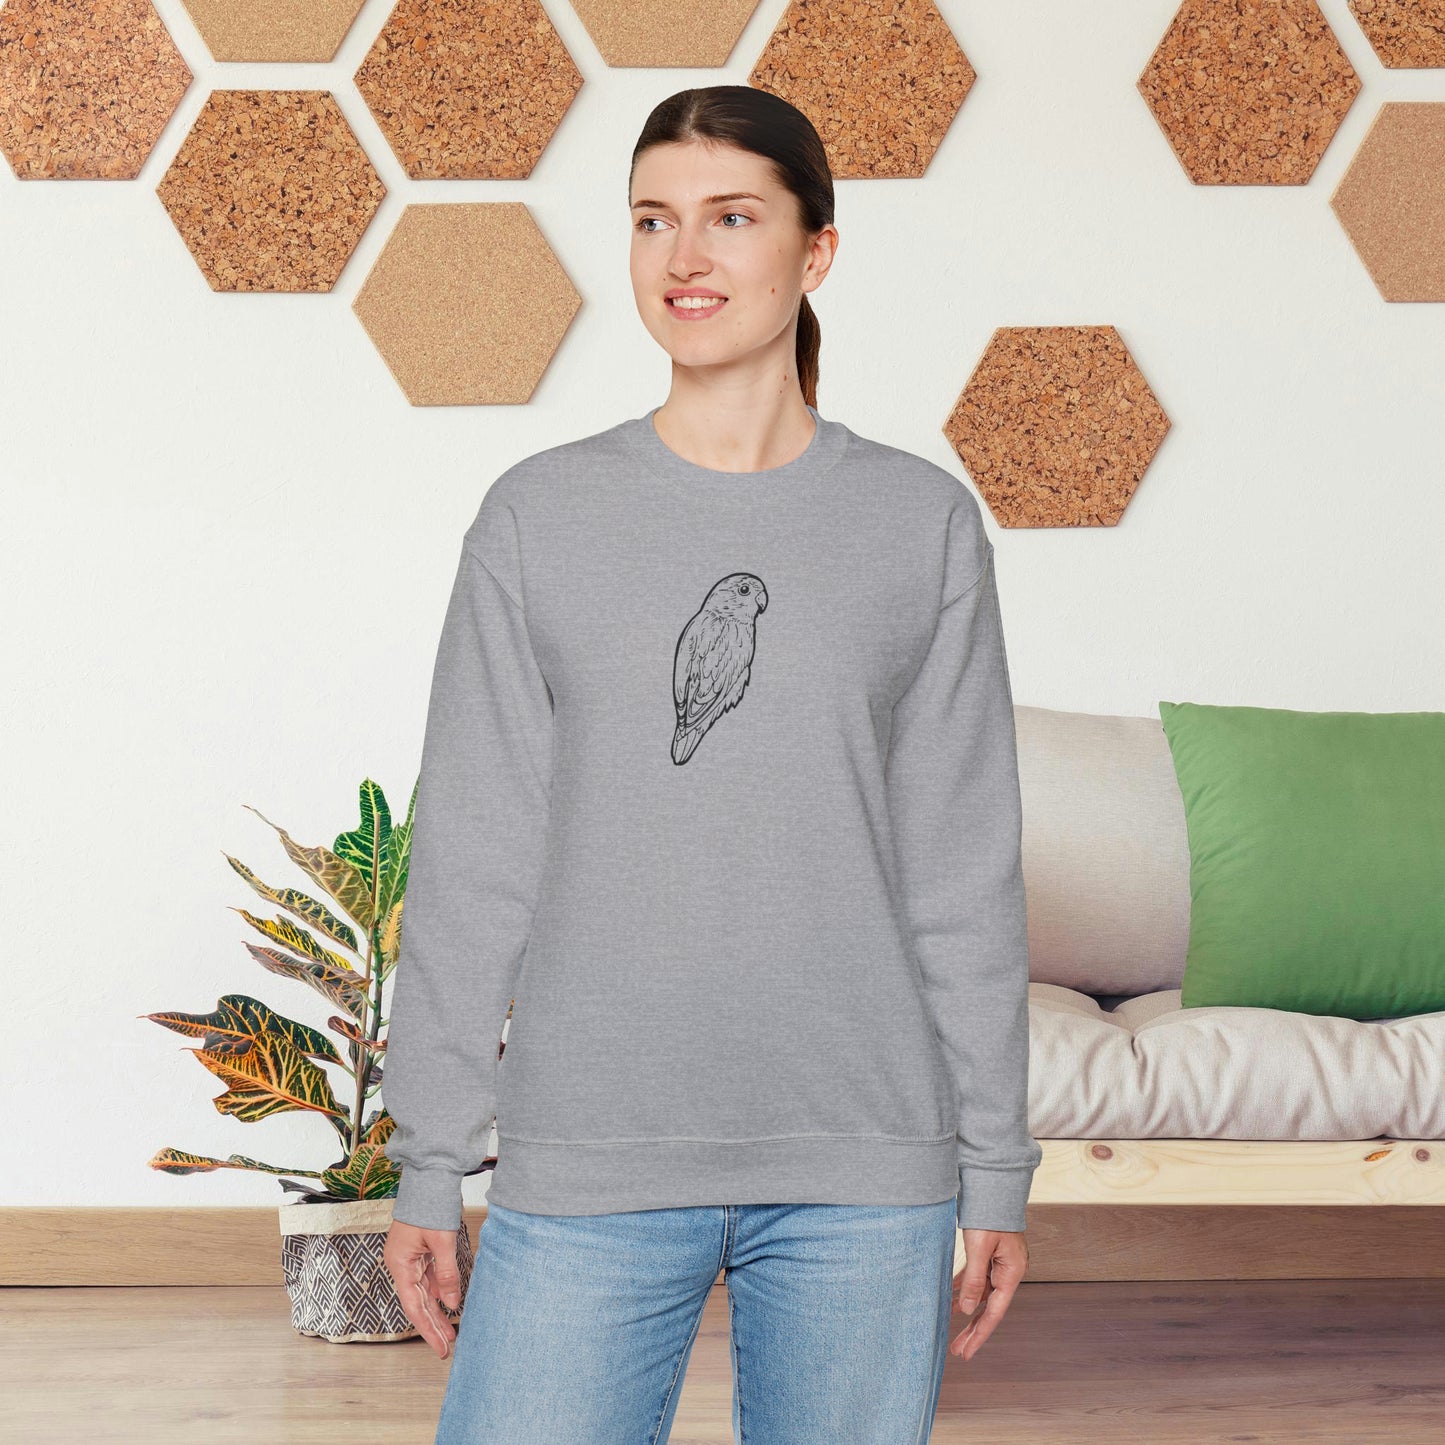 Cuddly Lovebird, Line Art Crew Neck Sweatshirt